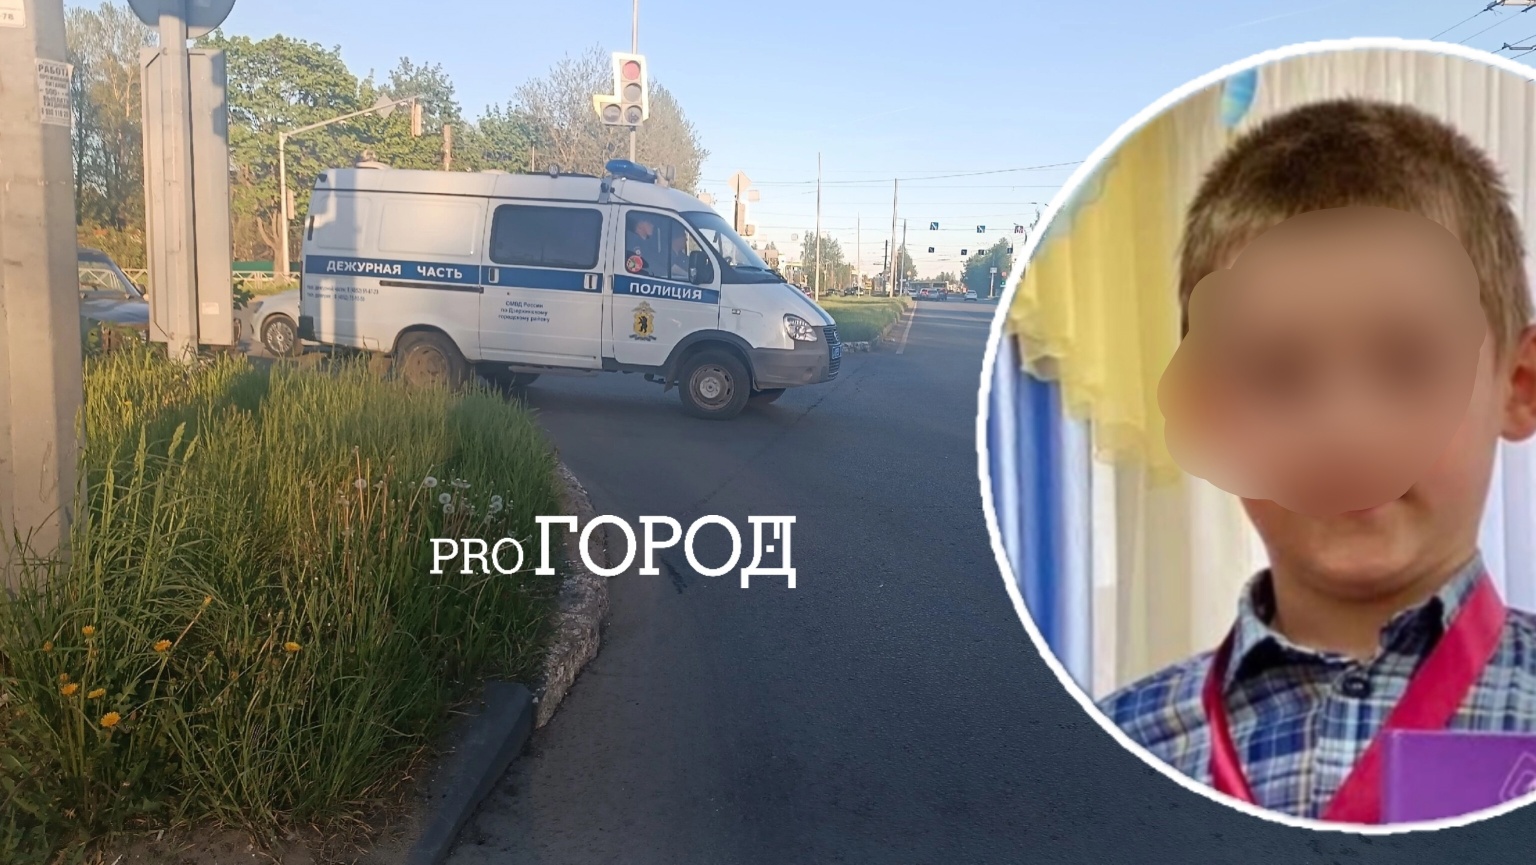   В Ярославле мать обвинила мужа в похищении 6-летнего сына